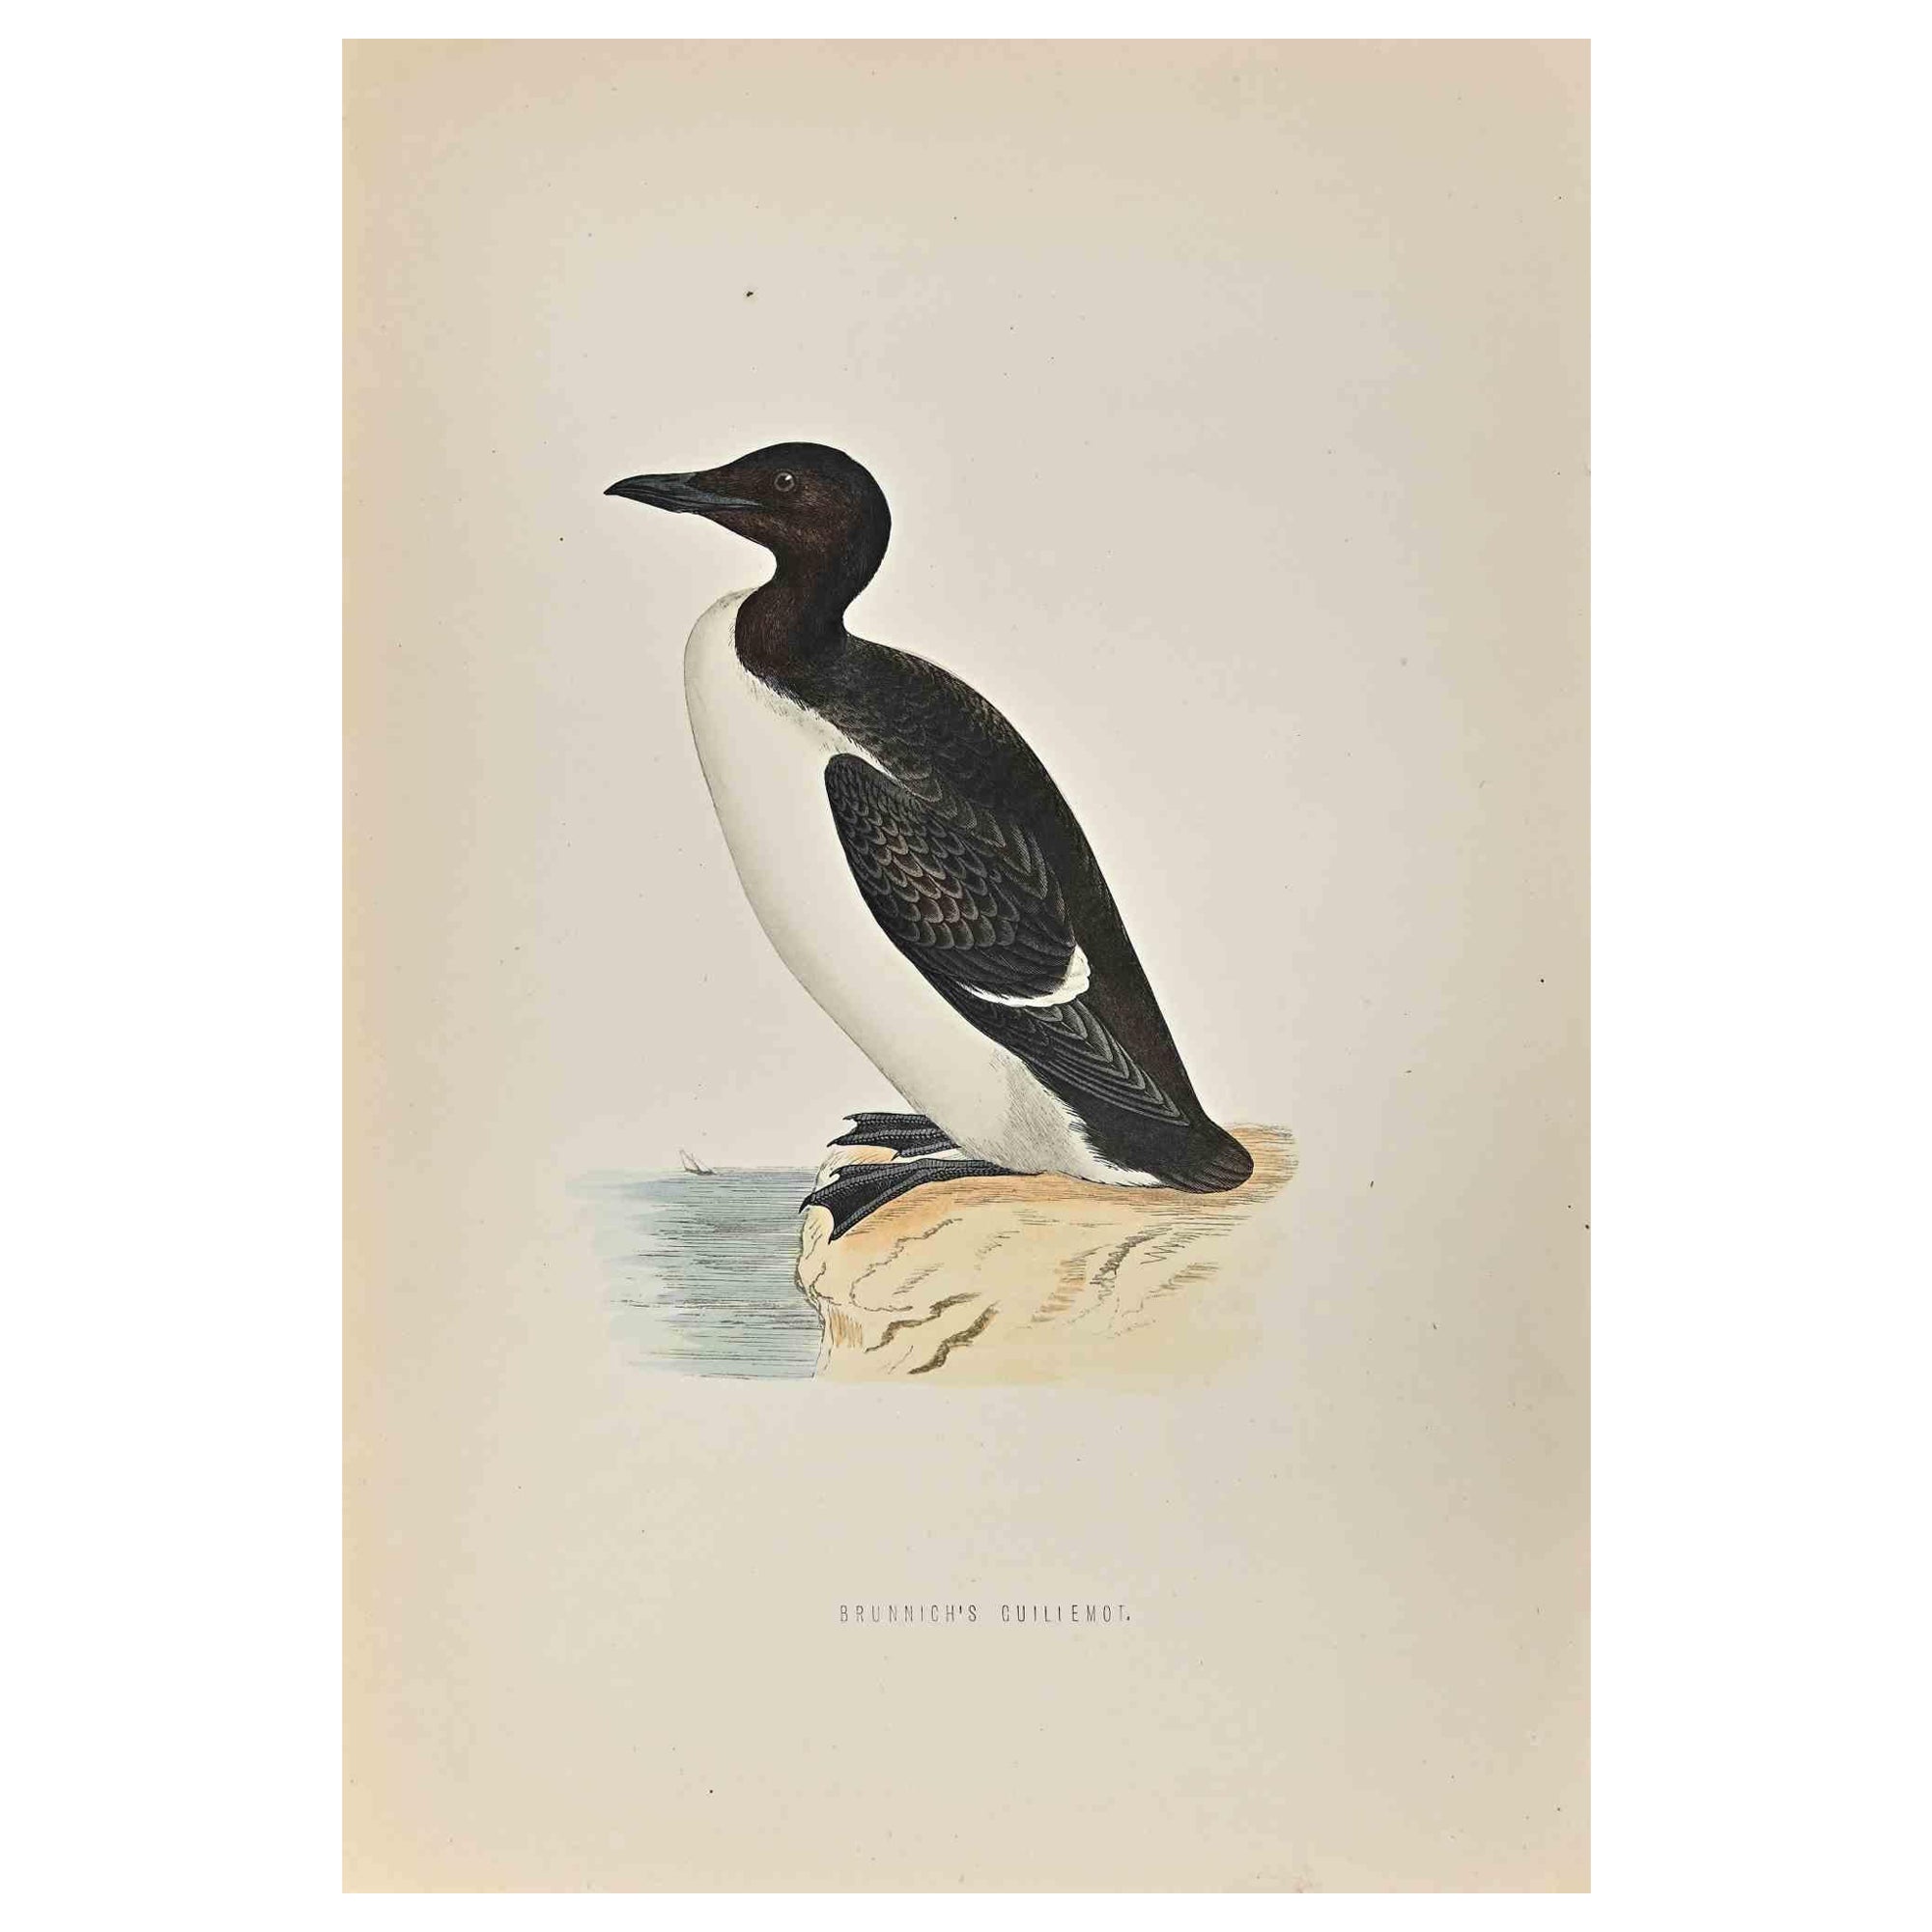 Le Guillemot de Brunnich est une œuvre d'art moderne réalisée en 1870 par l'artiste britannique Alexander Francis Lydon (1836-1917) . 

Gravure sur bois, colorée à la main, publiée par London, Bell & Sons, 1870.  Nom de l'oiseau imprimé dans la